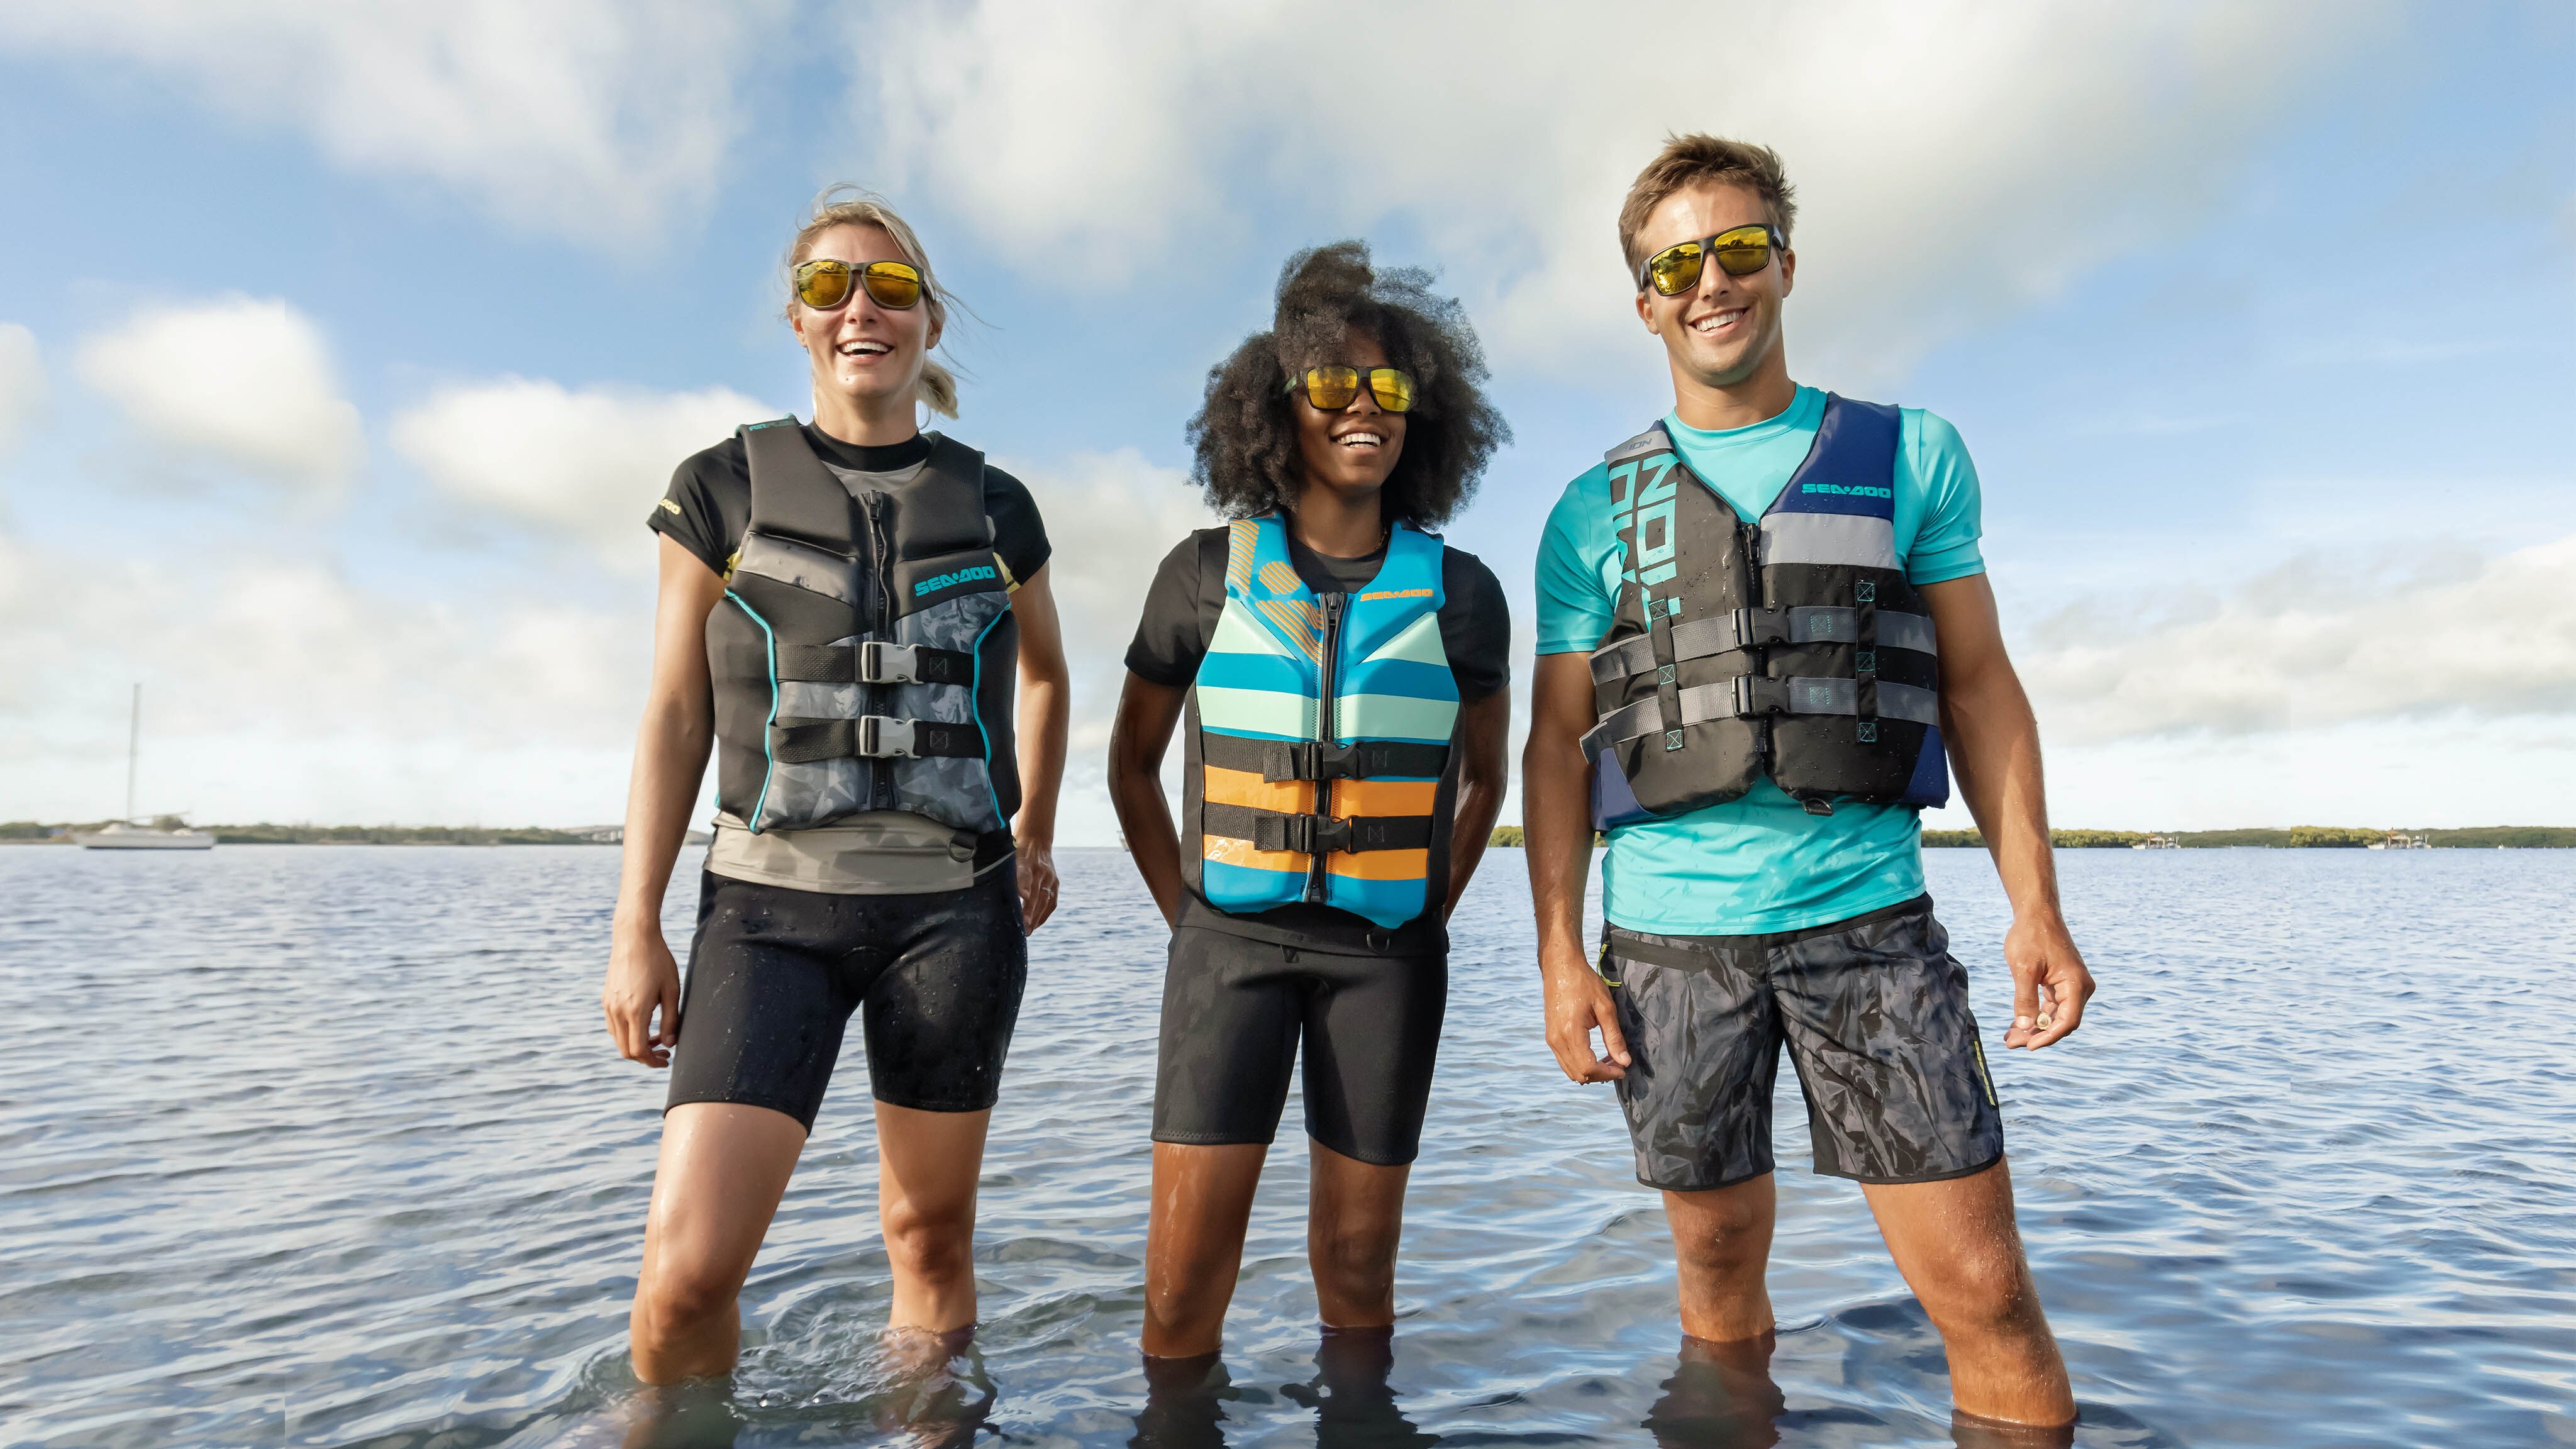 Groupe d'amis dans un lac, portant des vestes de flottaison Sea-Doo